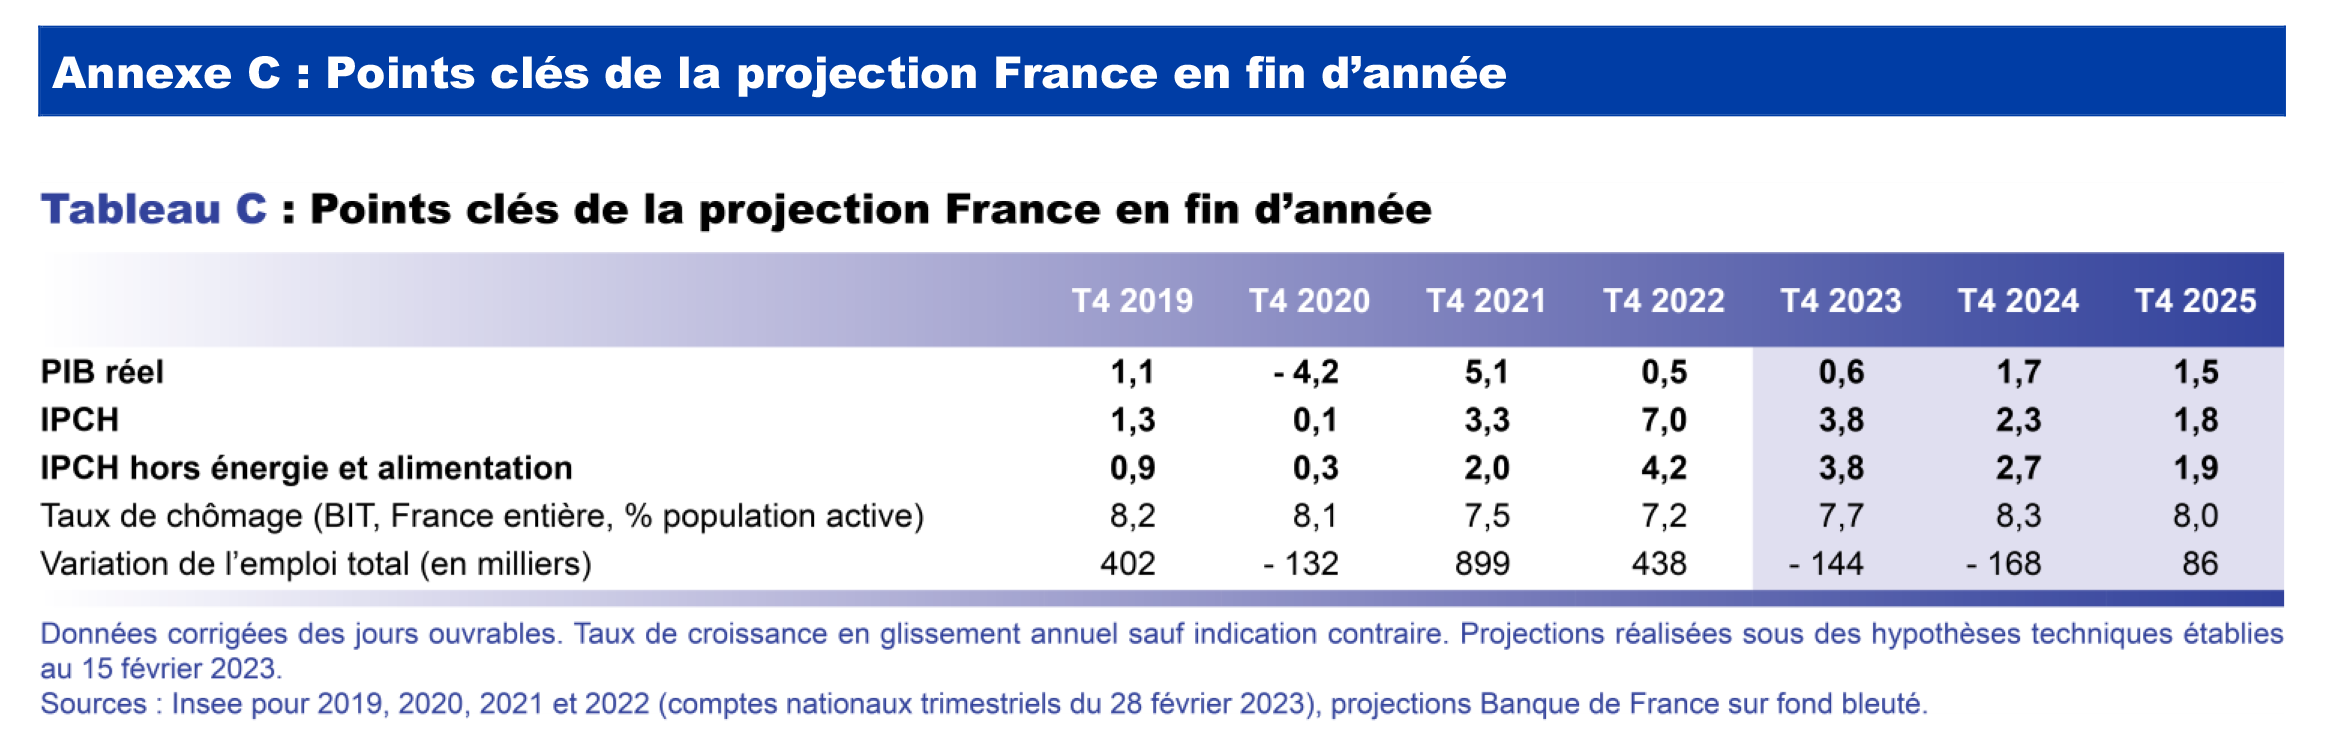 Projection macro mars 2023 - Points clés de la projection France en fin d'année